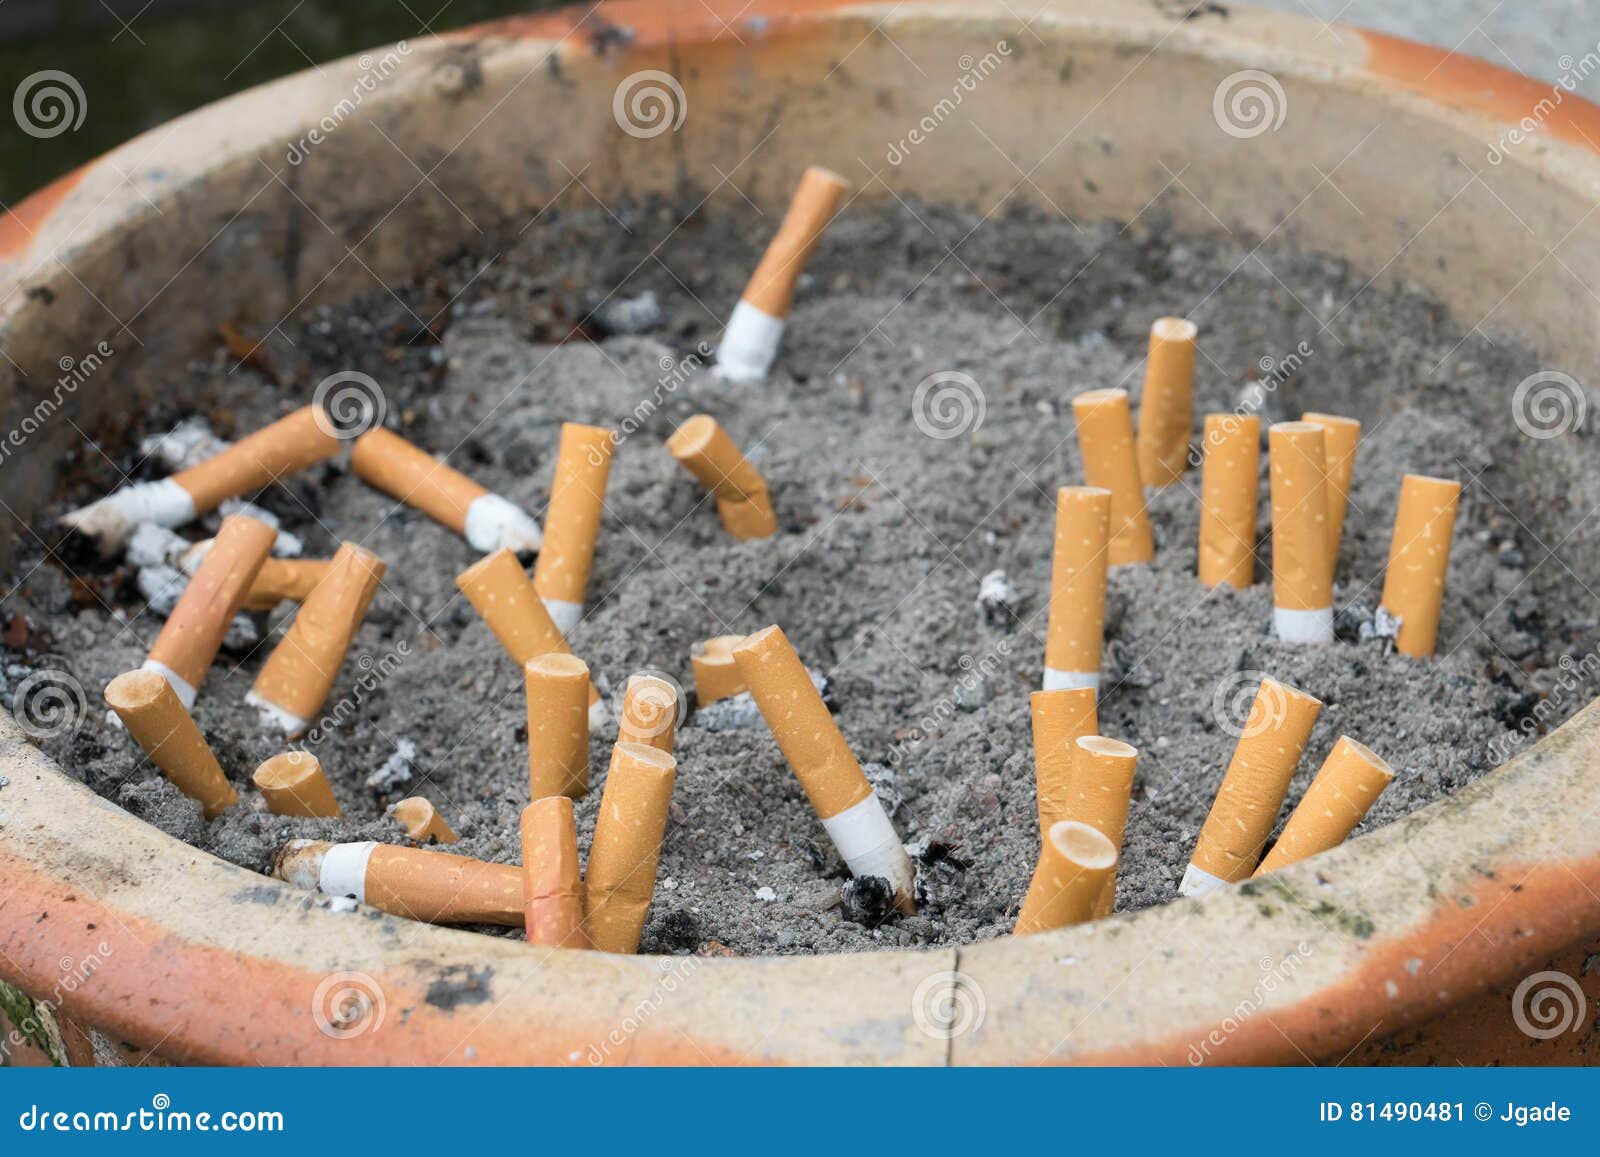 Portacenere All'aperto Con La Sabbia E Le Sigarette Immagine Stock -  Immagine di bianco, malsano: 81490481